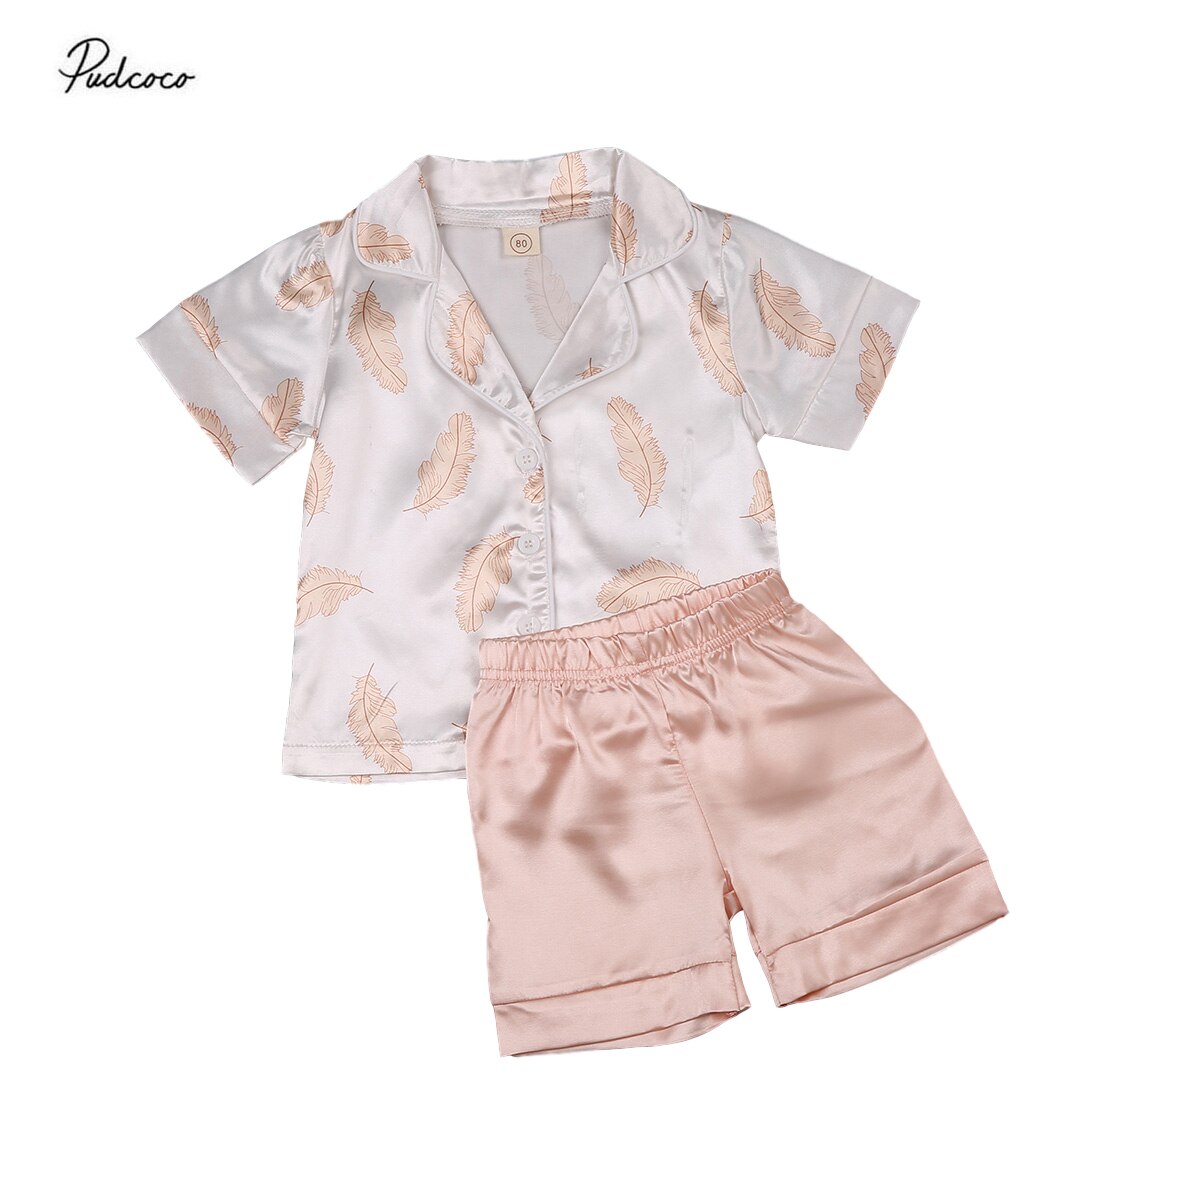 Børn pyjamasæt baby drenge piger silke pyjamas nattøj outfit tøj solid fjer print skjorte + bukser nattøj sæt 2 stk 1-6y